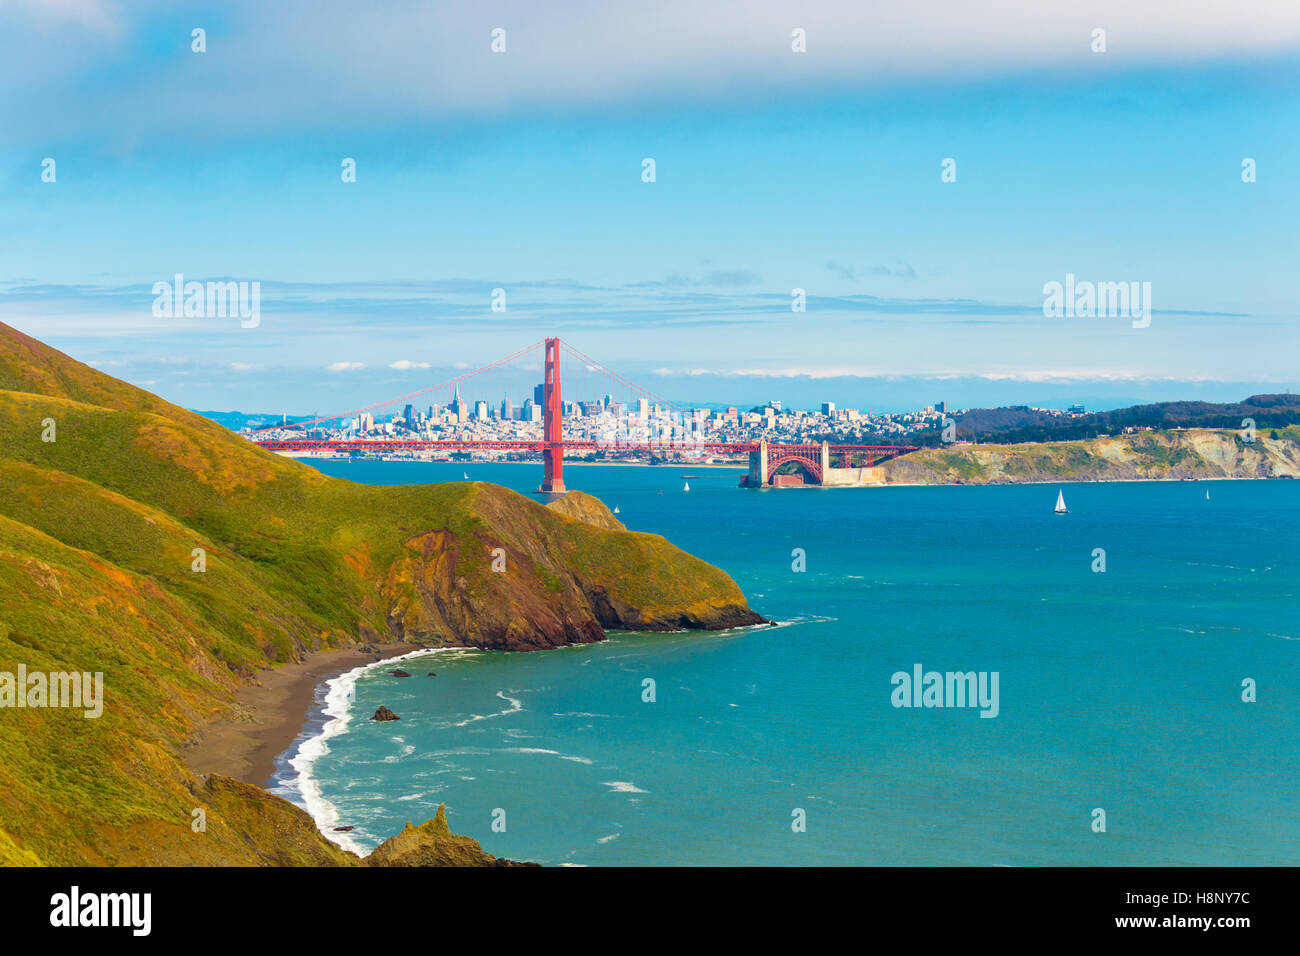 Entfernte Innenstadt von San Francisco Stadtbild durch die Golden Gate Bridge zusammen mit Hügeln der Marin Headlands gesehen Stockfoto